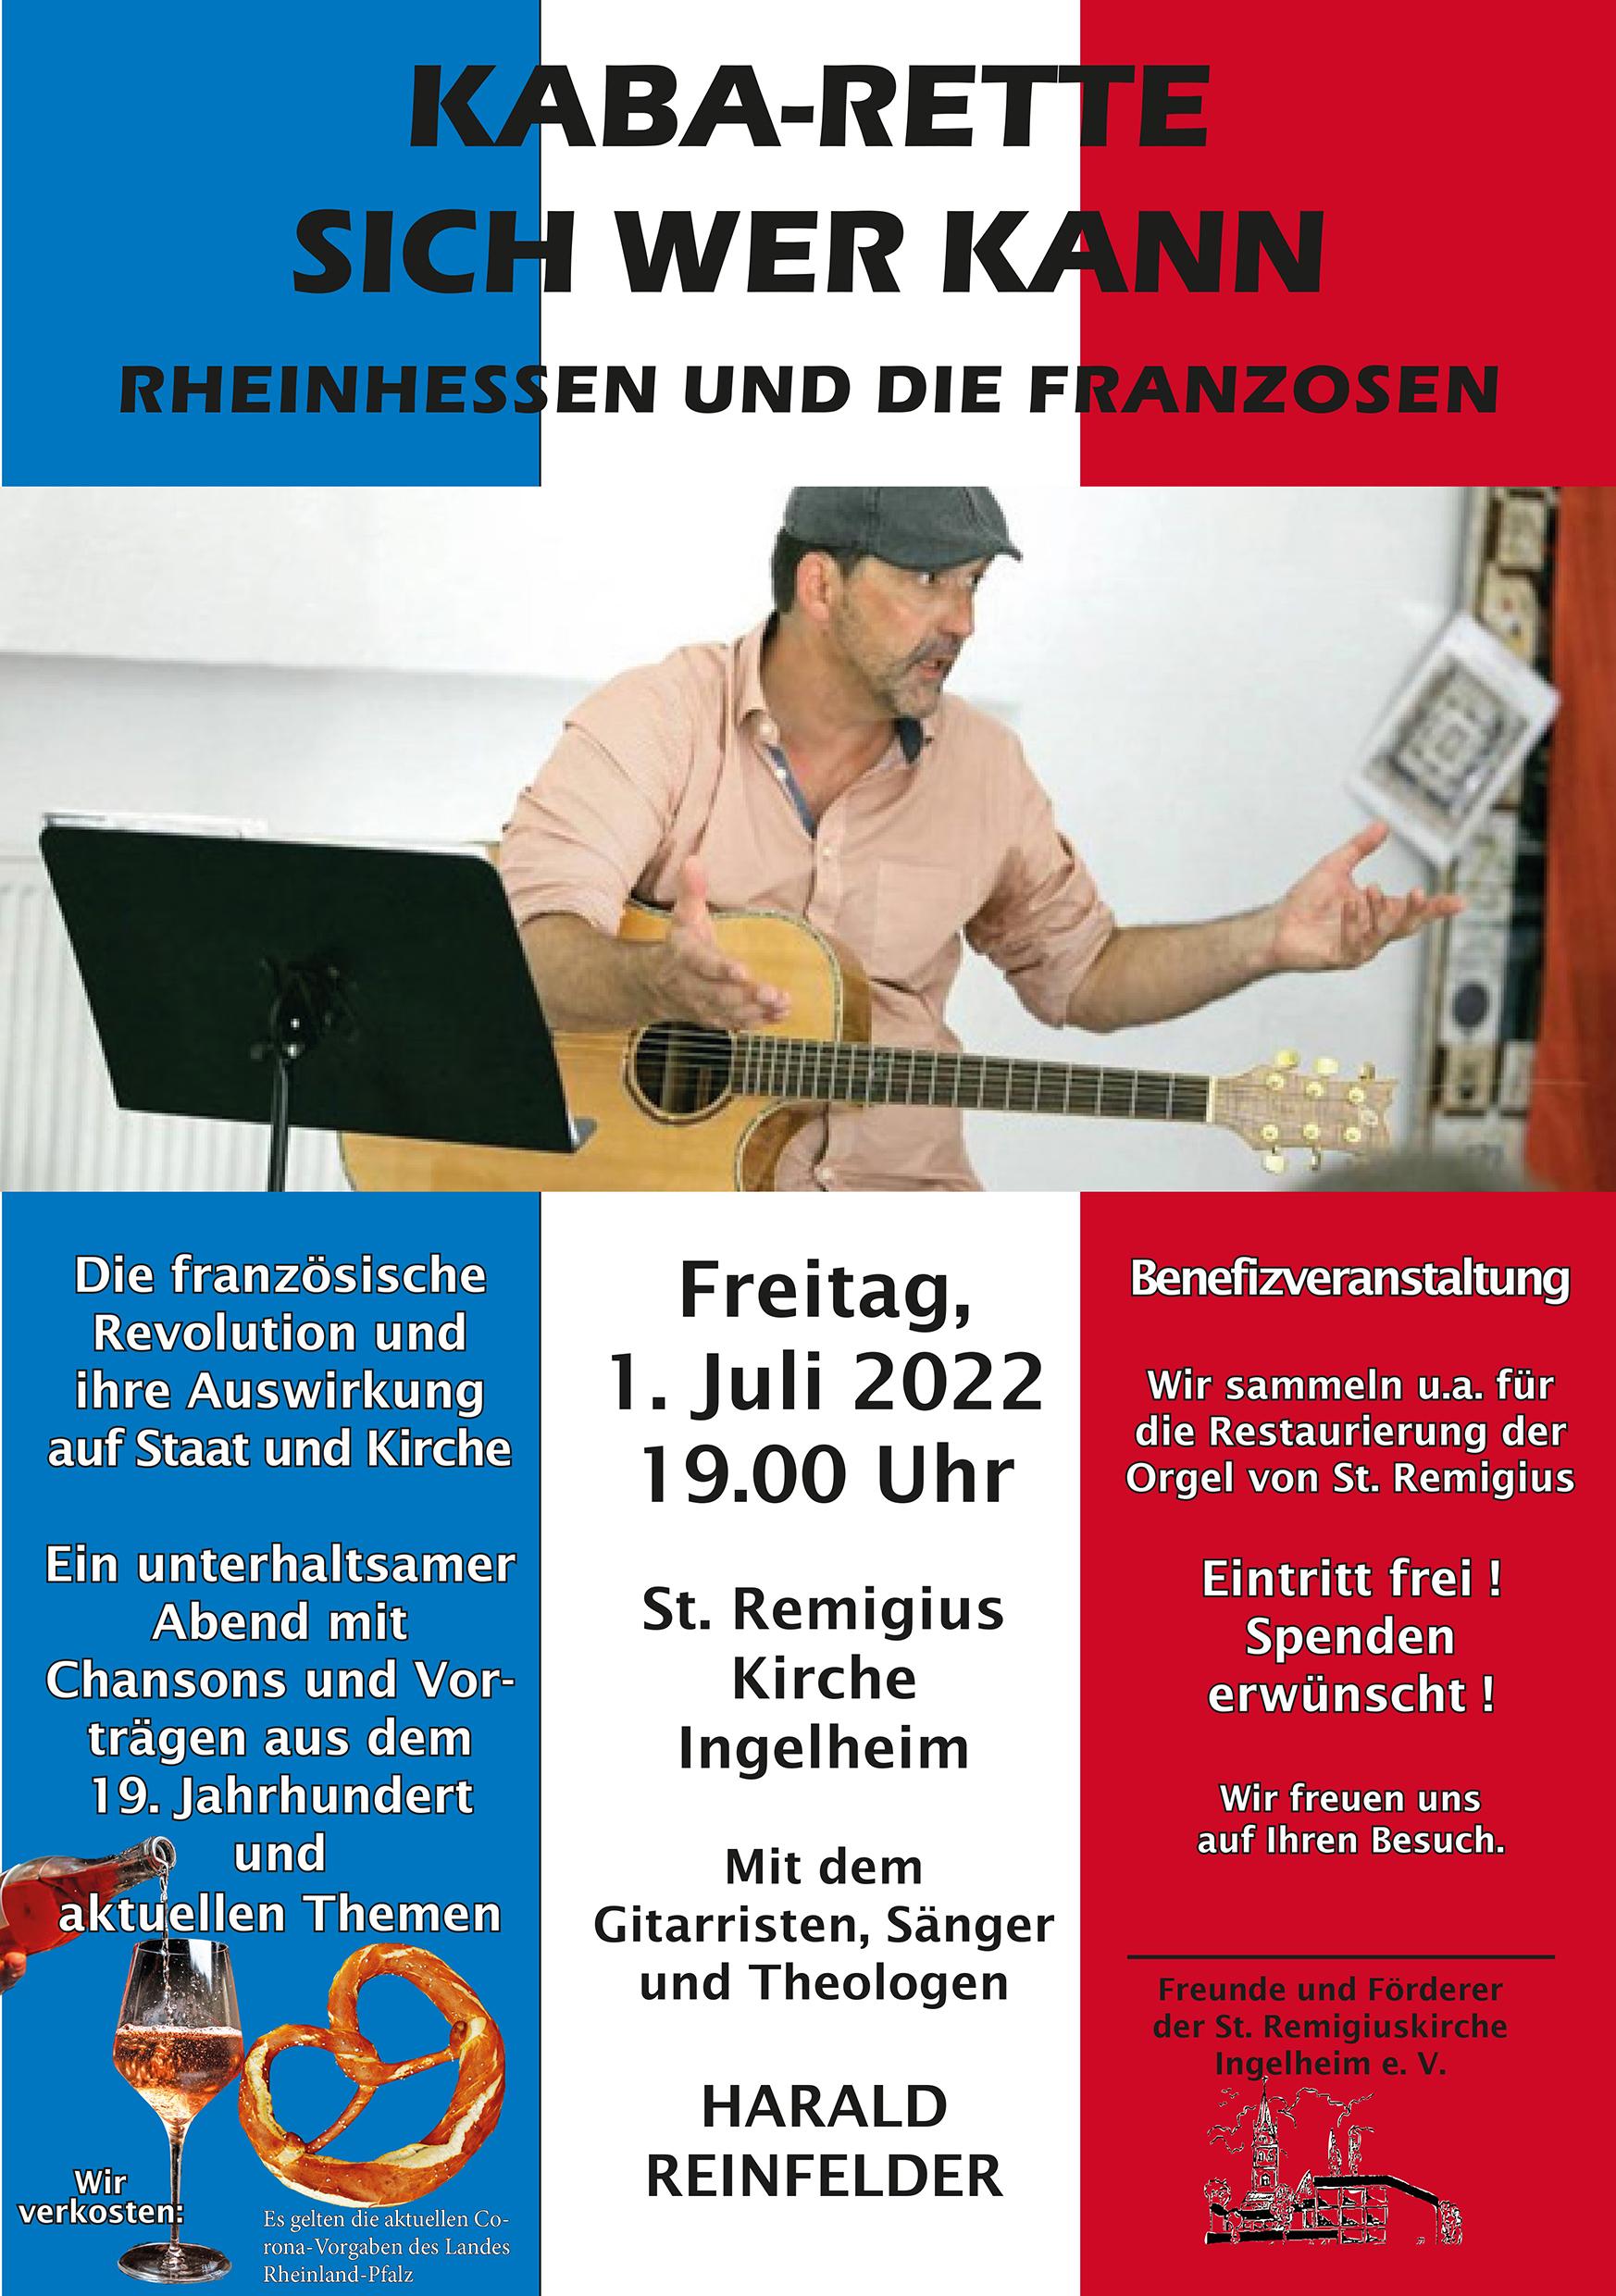 Franzosen-Rheinhessen-Abend am 1. Juli